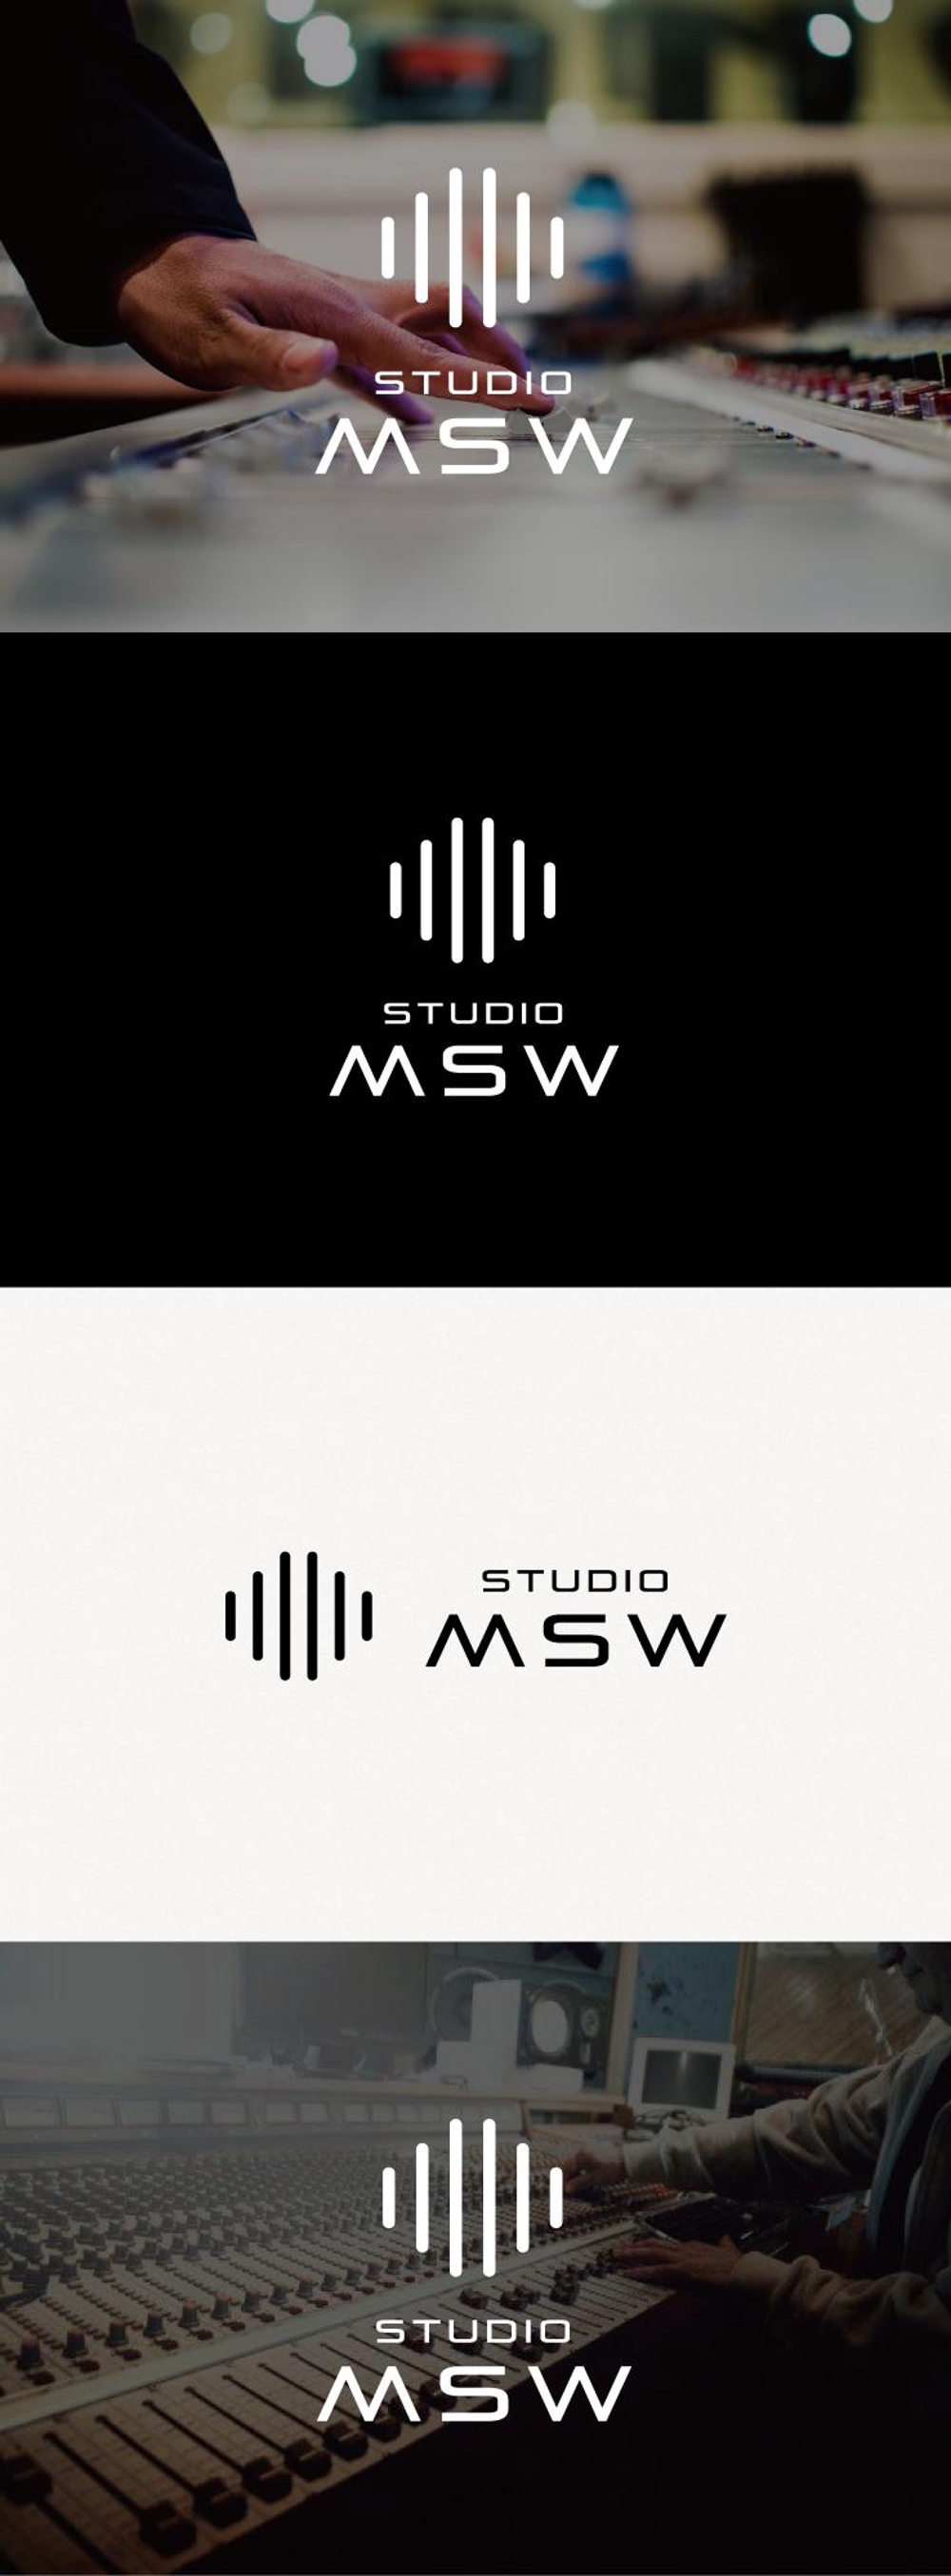 音楽リハーサルスタジオ「studio MSW」のロゴ